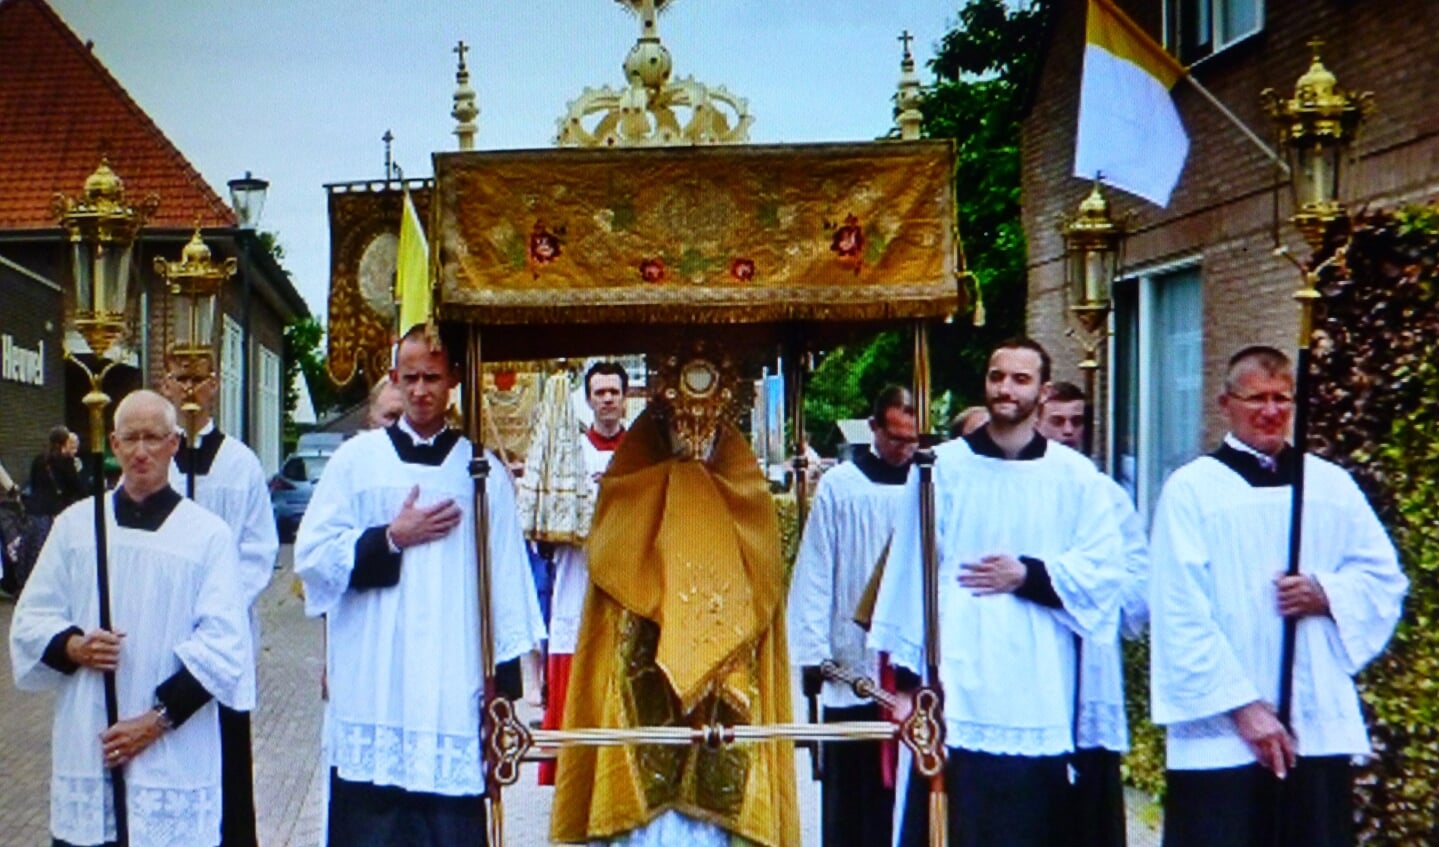 Pater Carlo de Beer, die tijdens de Sacramentsprocessie de Monstrans met de Hostie in zijn Handen draagt, loopt onder het baldakijn, dat door vier baldakijndragers wordt vastgehouden. 